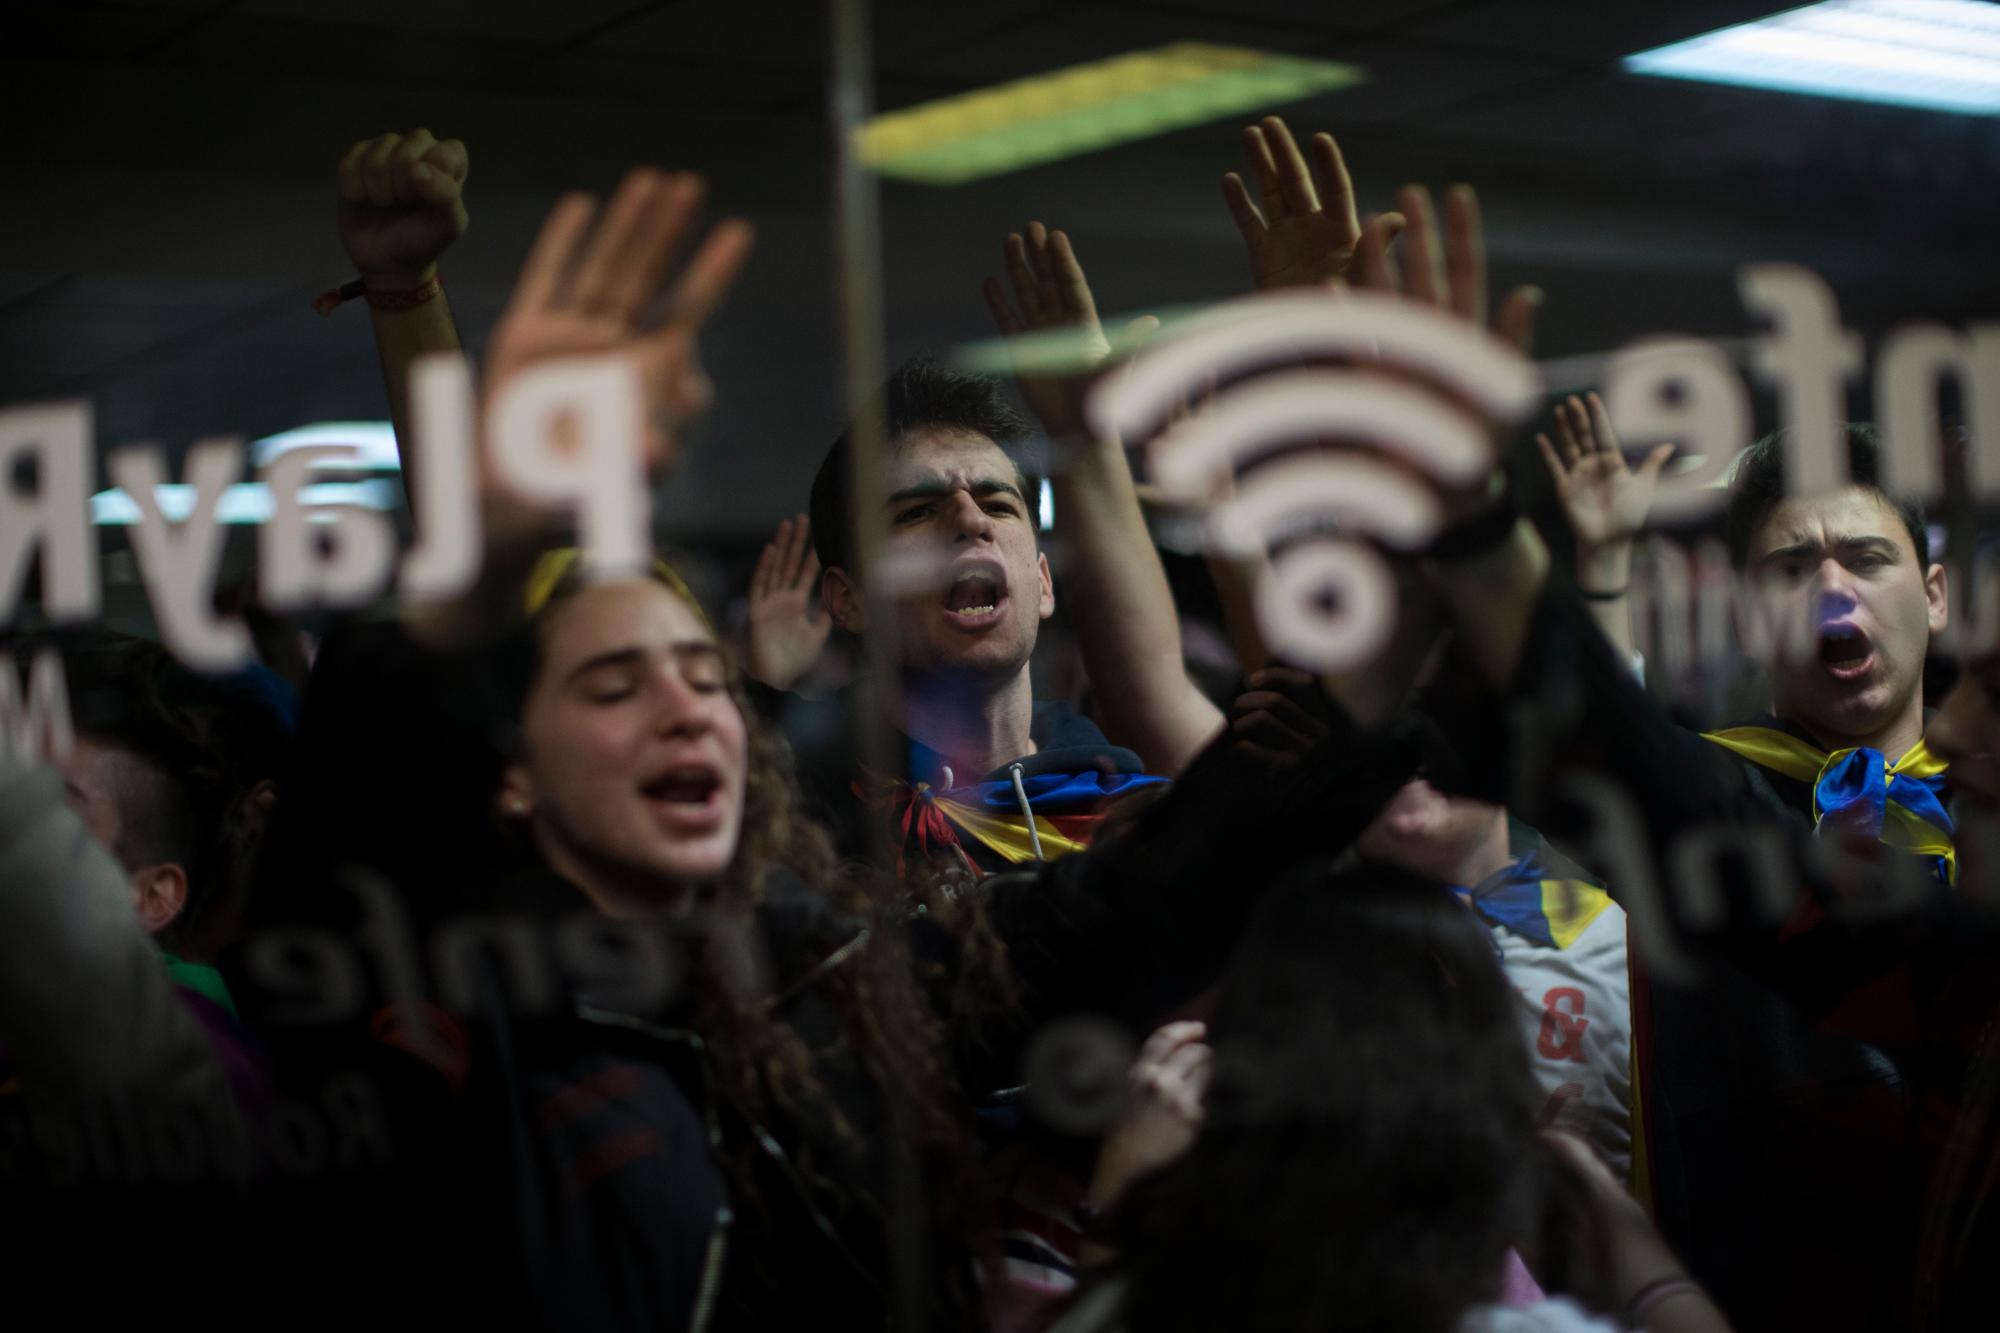 Los manifestantes intentan ingresar a un tren subterráneo para bloquear un tren durante una huelga general en Cataluña, España, el jueves 21 de febrero de 2019.